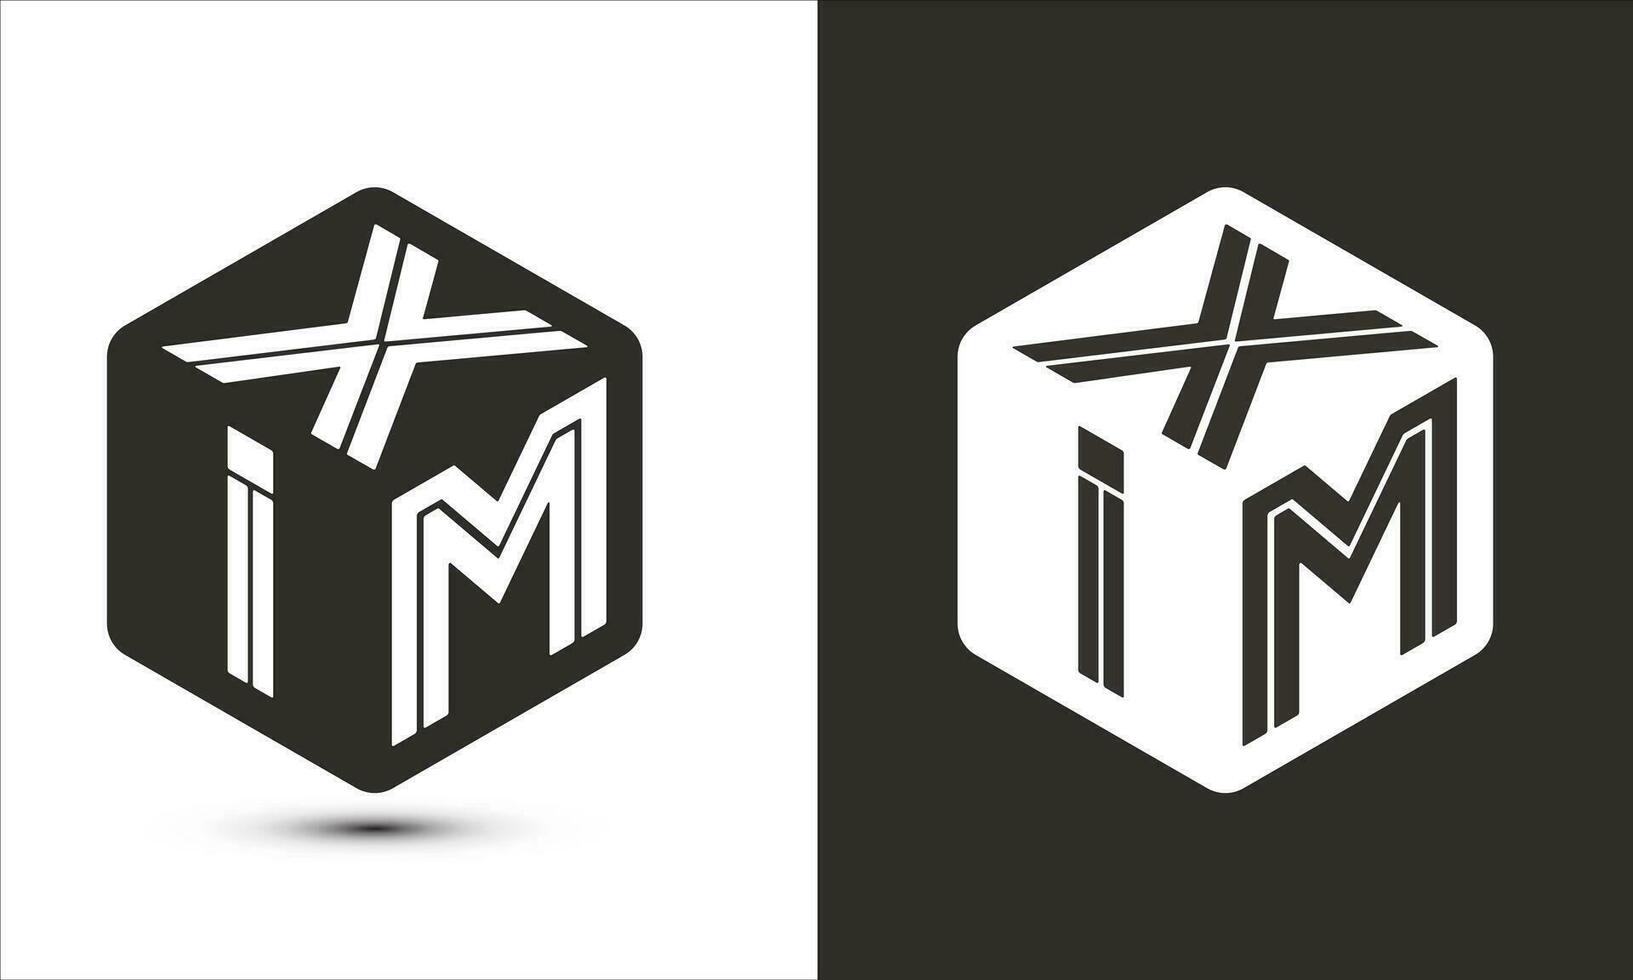 xim brief logo ontwerp met illustrator kubus logo, vector logo modern alfabet doopvont overlappen stijl.